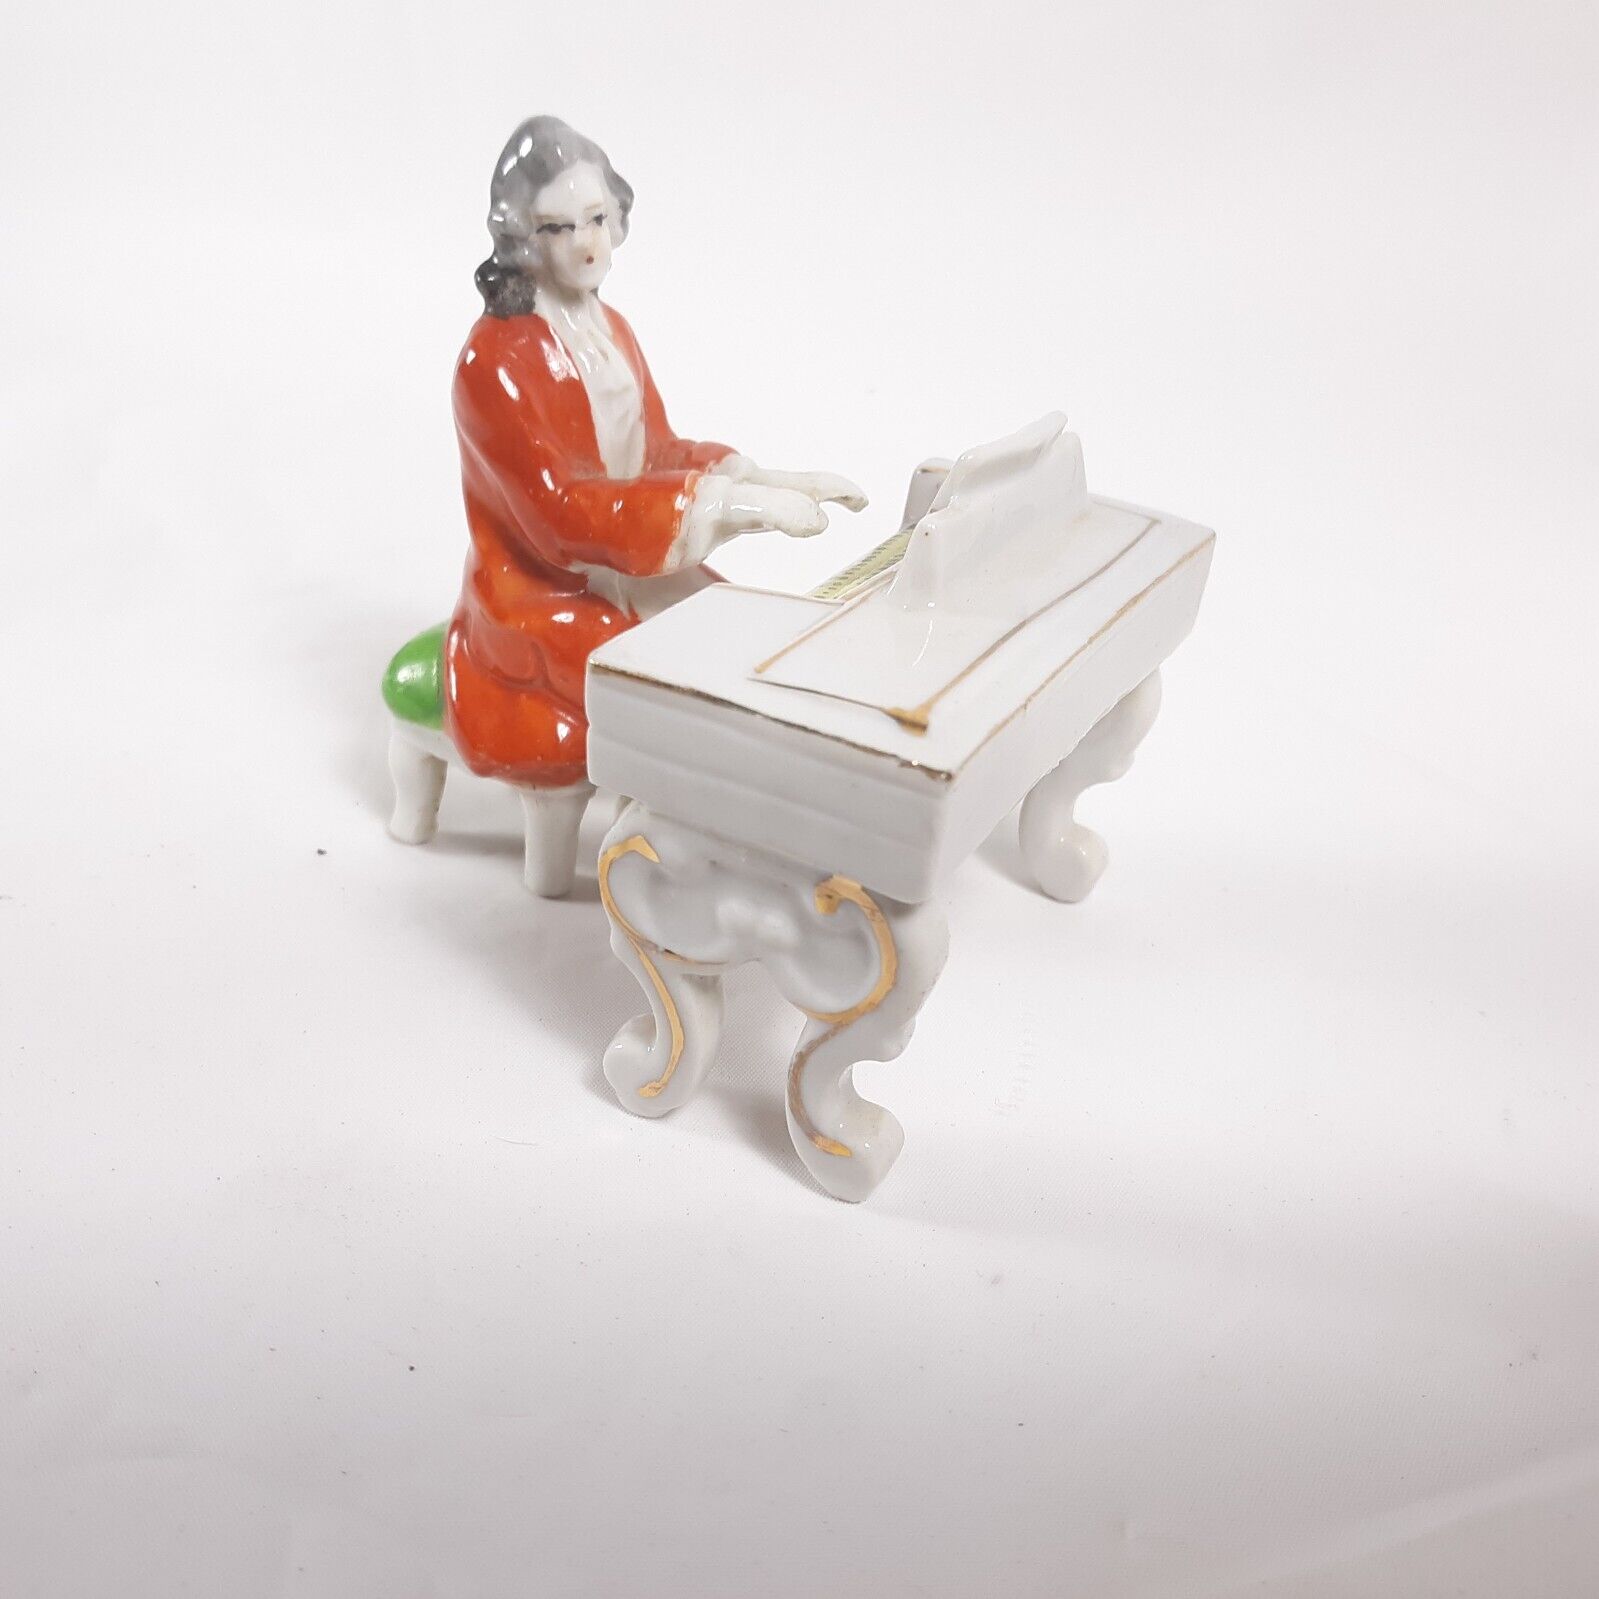 Miniature Small Man Playing Piano Vintage Figurine Japan Ceramic